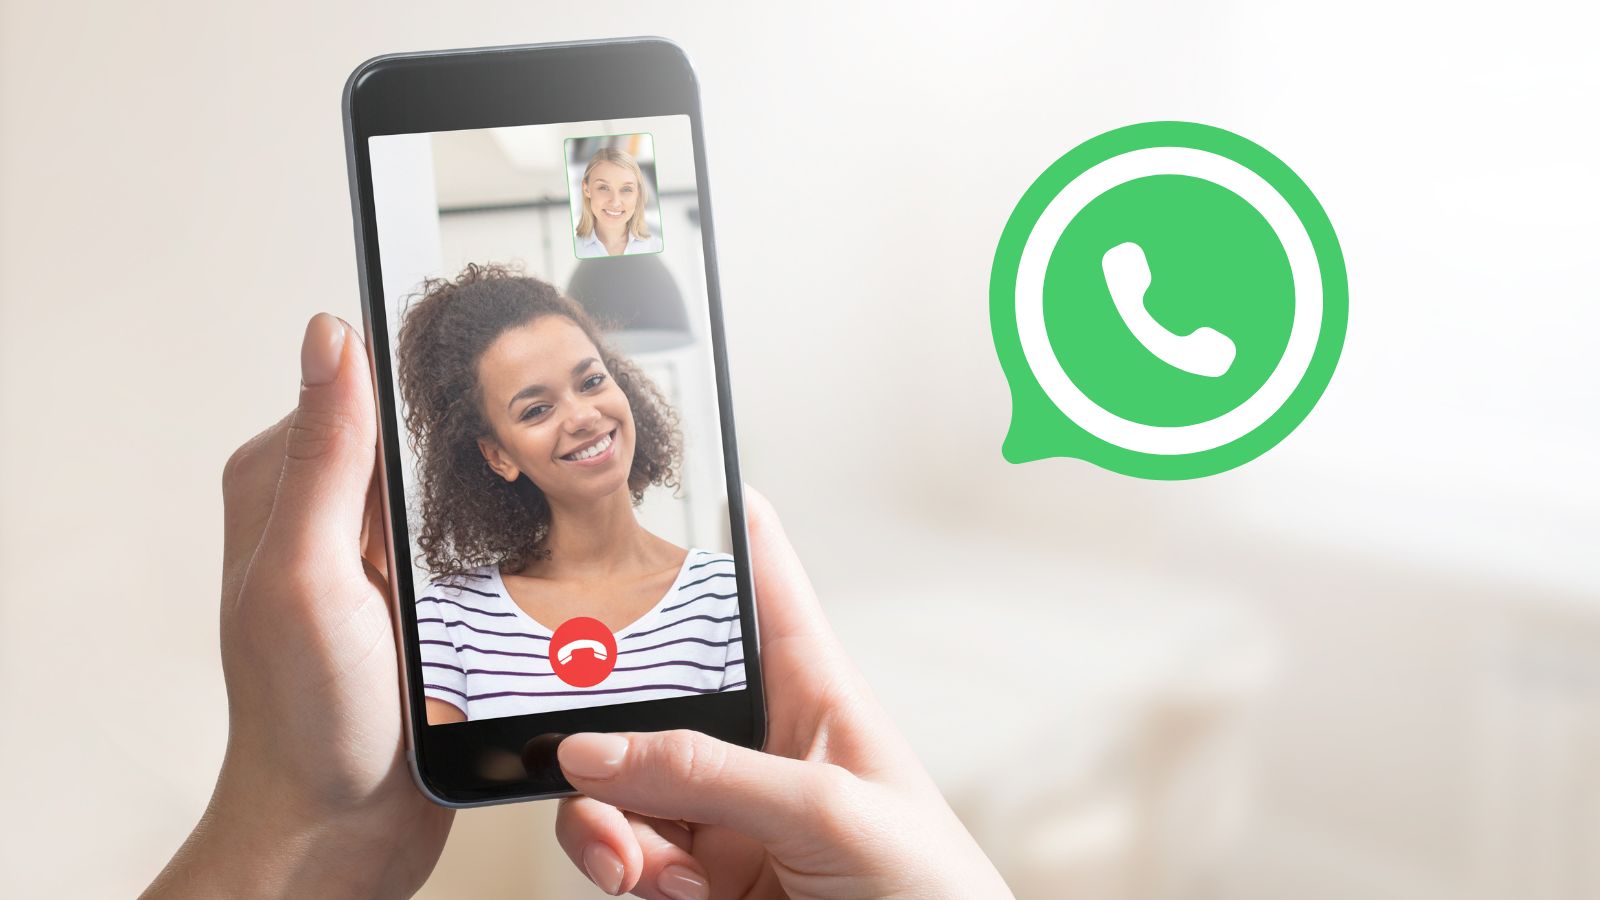 Scopri passo dopo passo come attivare gli effetti speciali durante le videochiamate su WhatsApp